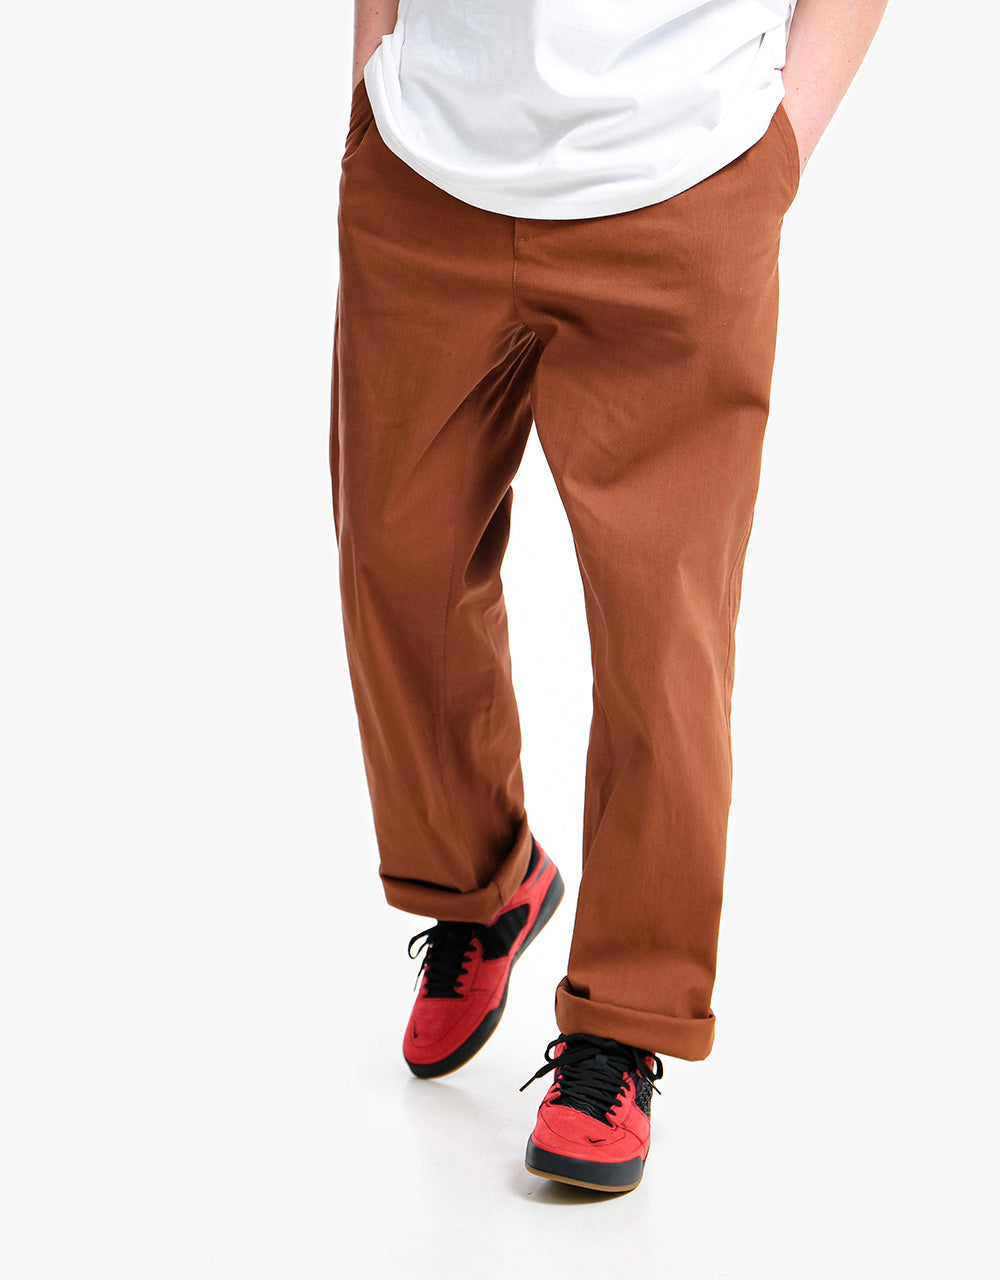 Nike SB Loose Fit Chino Pant - Pecan